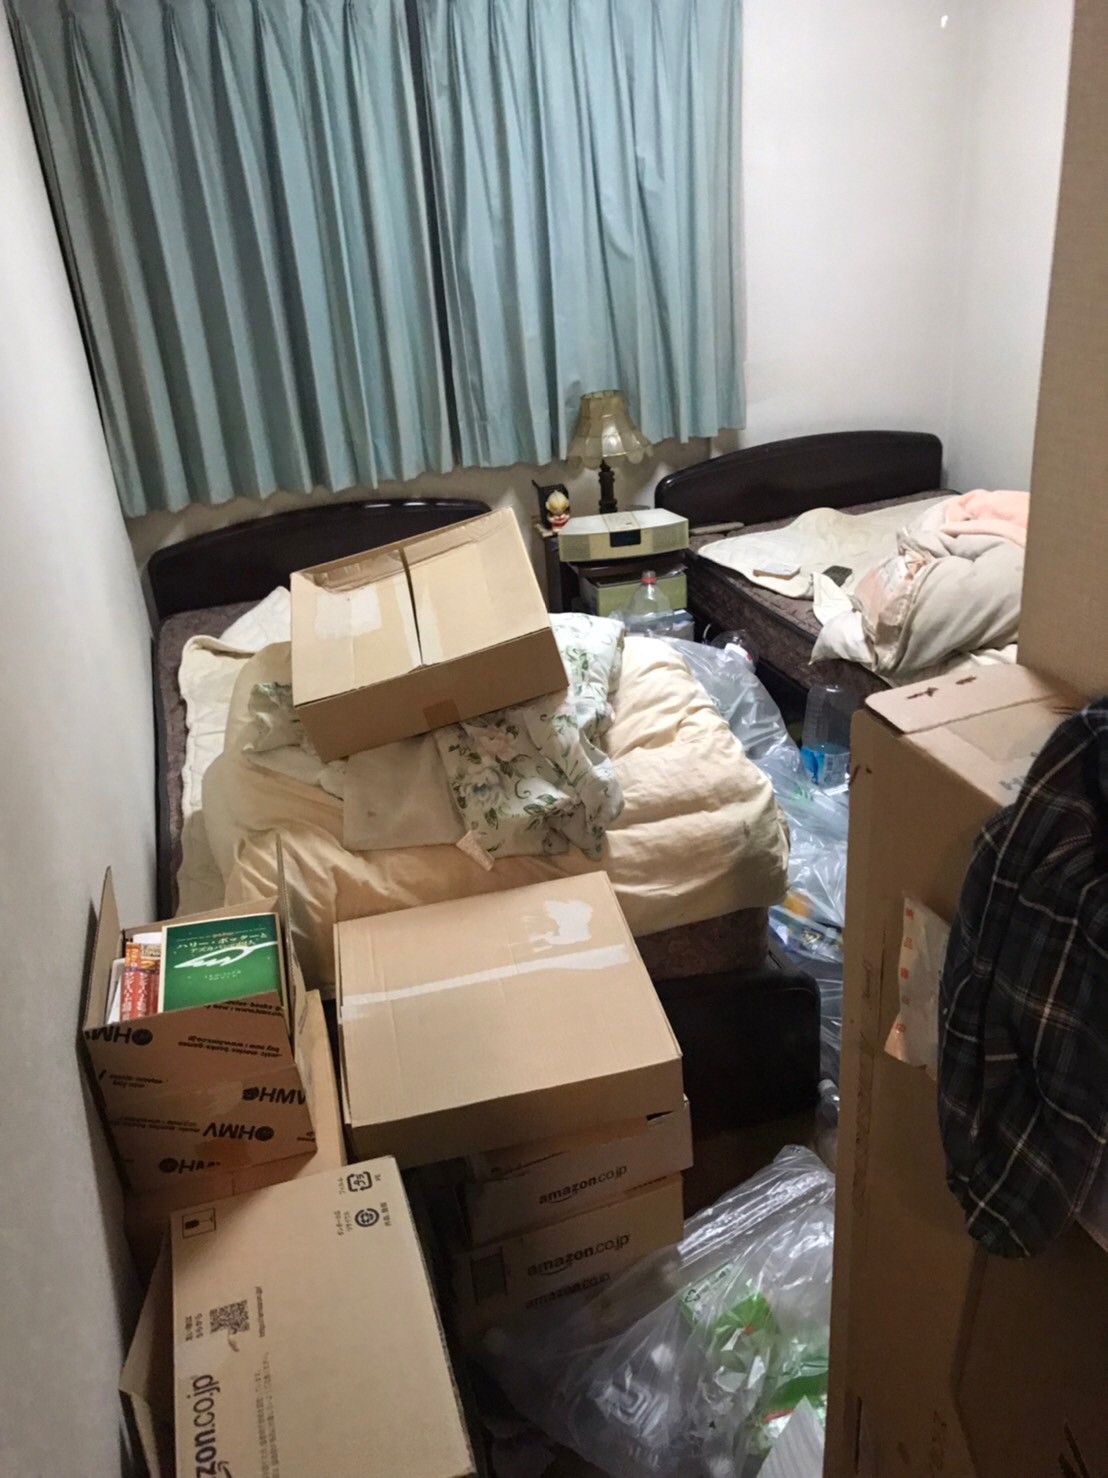 ベッド、布団、多数の不要な生活用品の回収前の状態